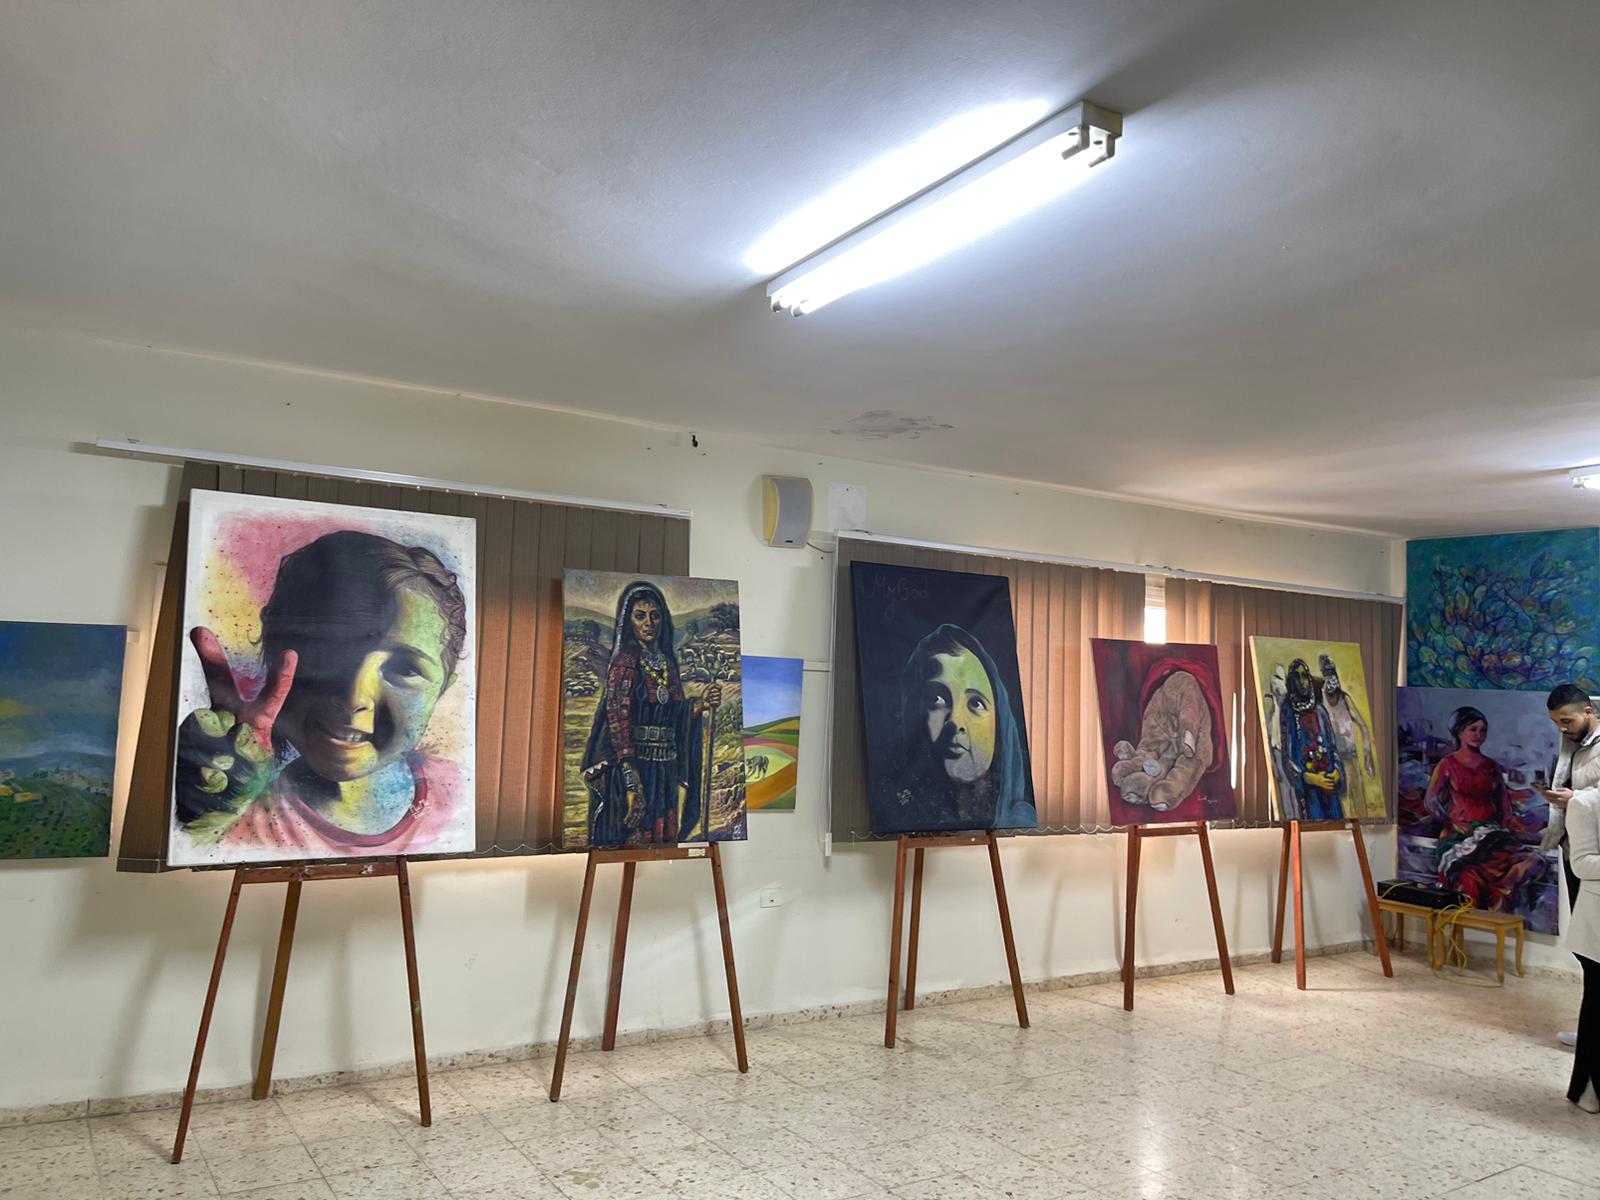 افتتاح معرض لفنانين من غزة